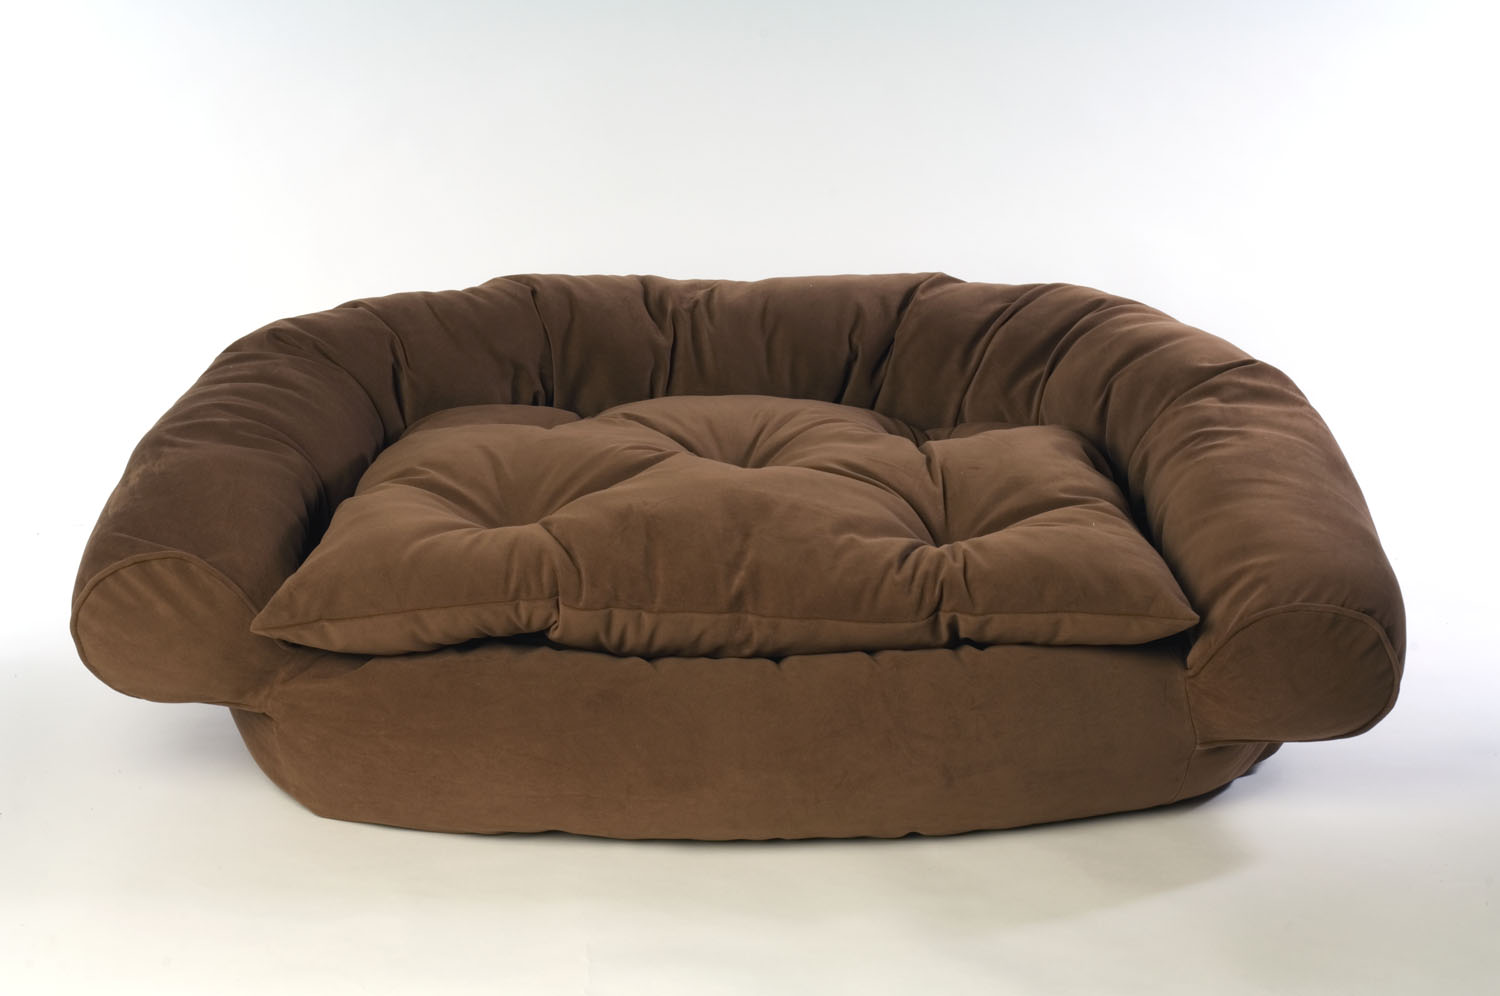 Medium Microfiber Comfort Couch - Chocolate